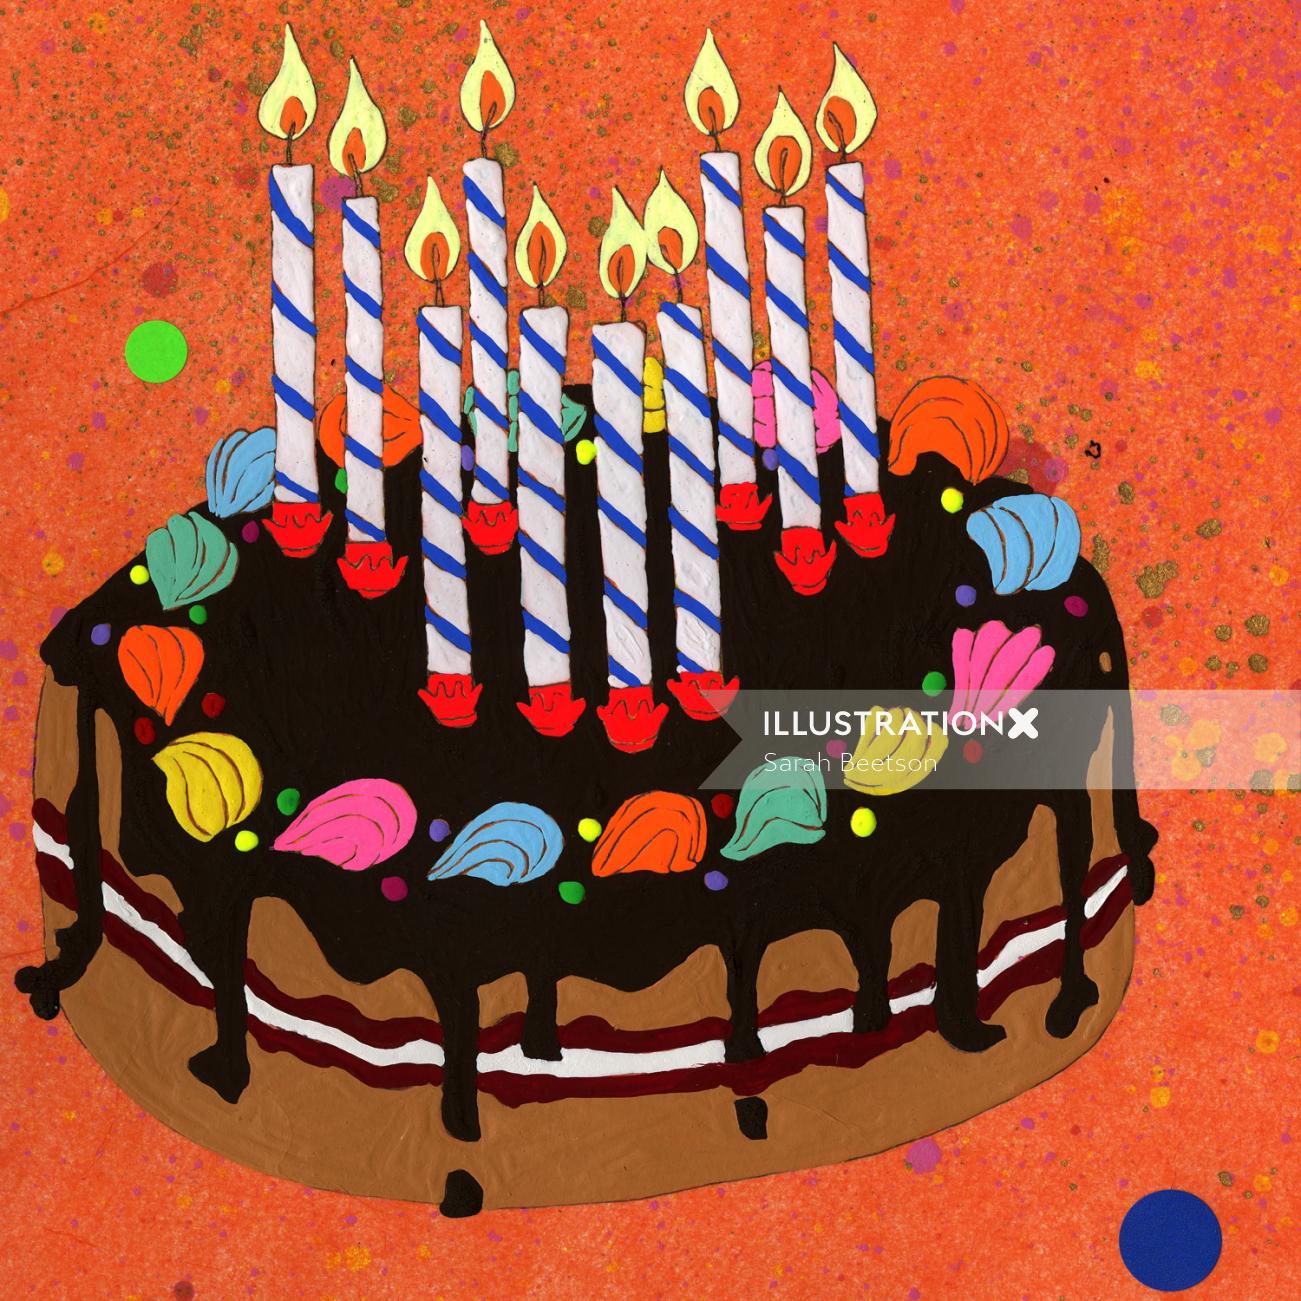 Gâteau d&#39;anniversaire avec bougies - Une illustration de Sarah Beetson